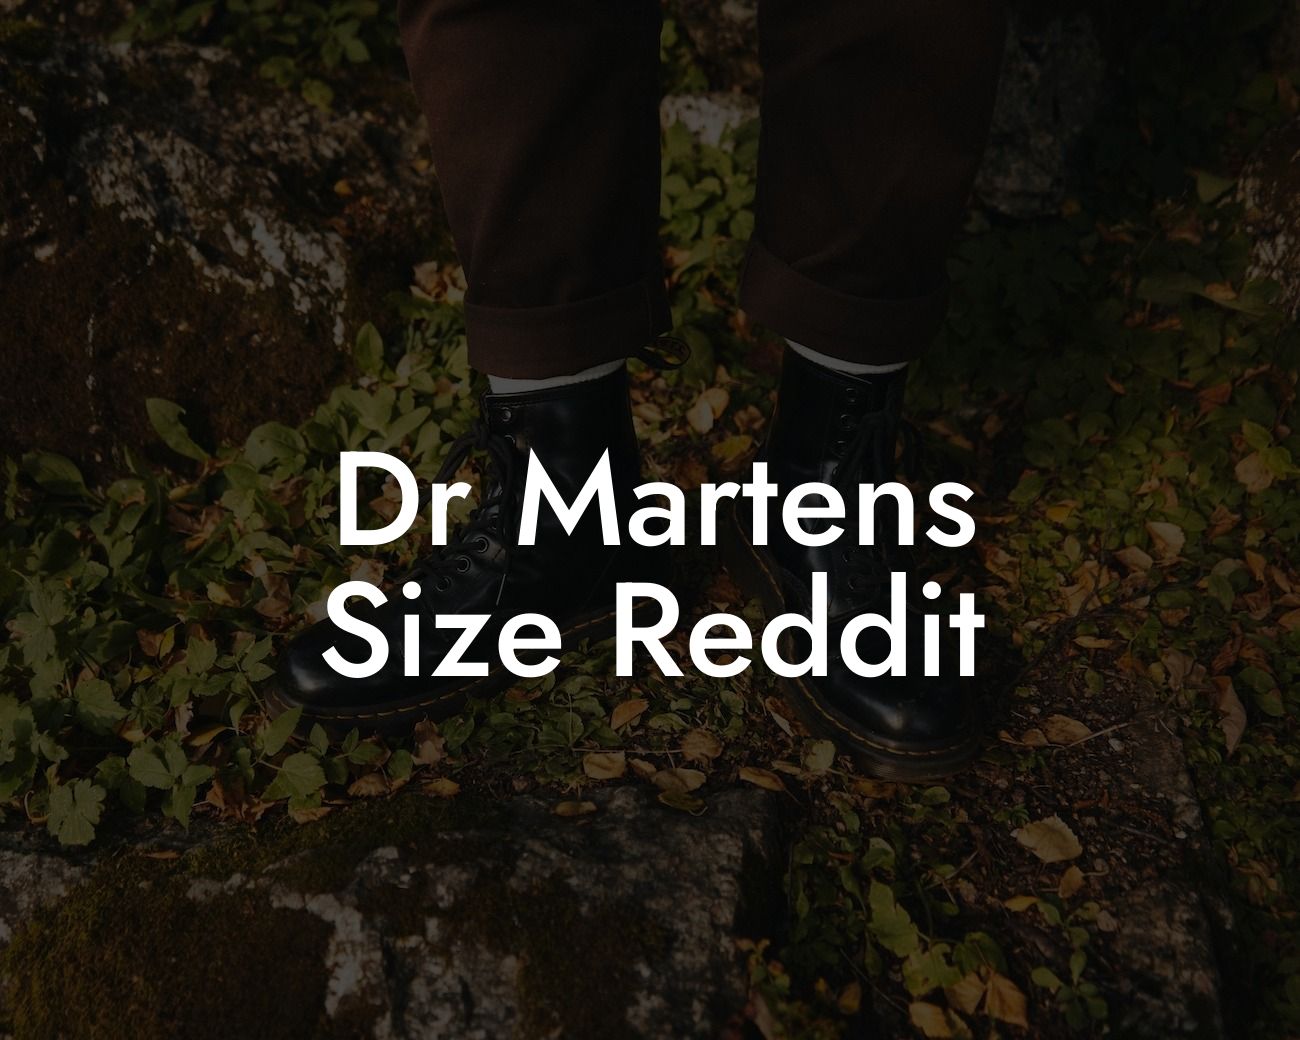 Dr Martens Size Reddit